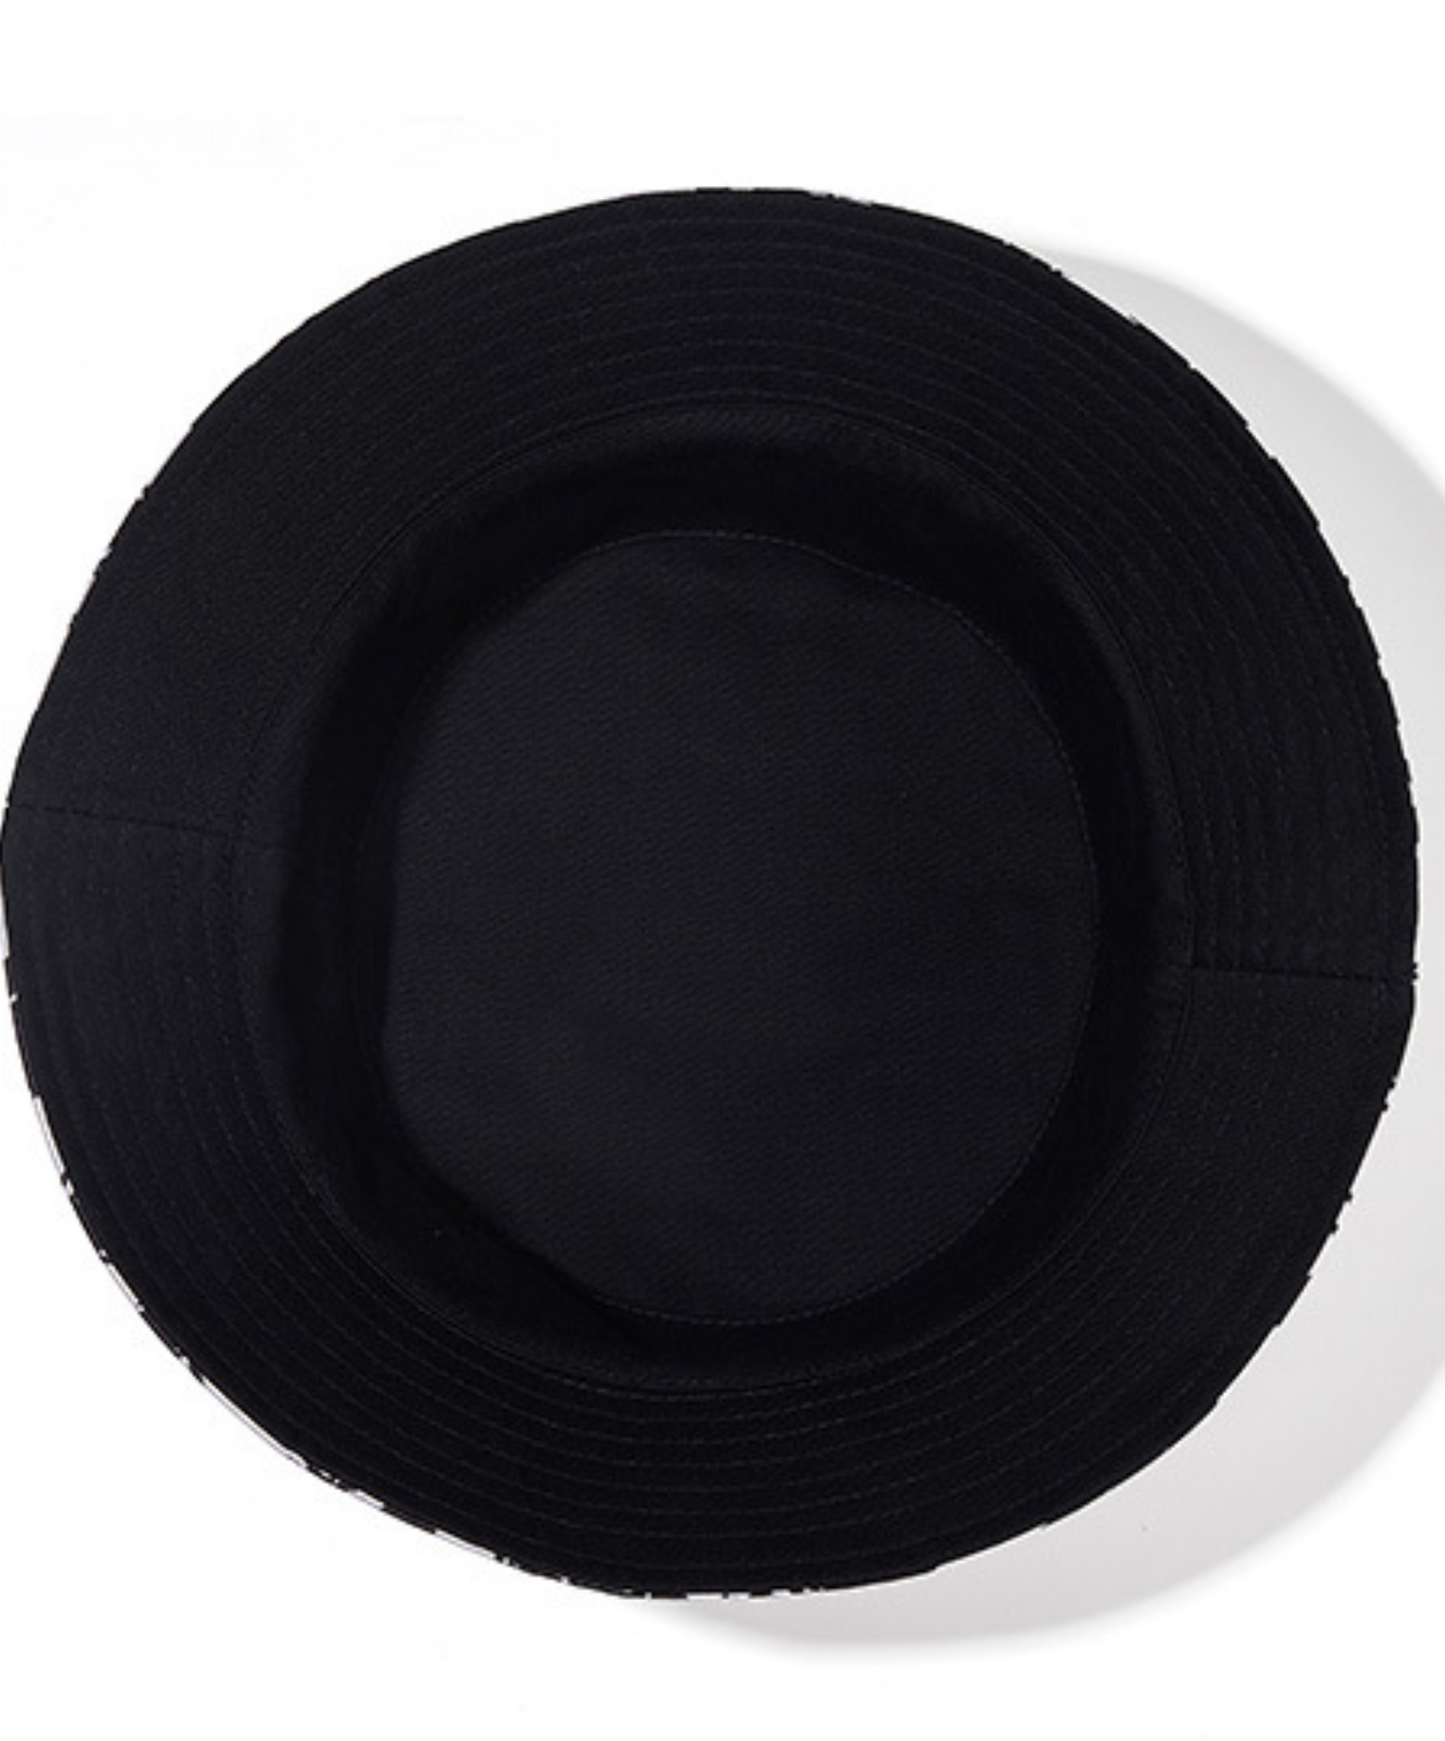 reversible foldable bucket hat EN696